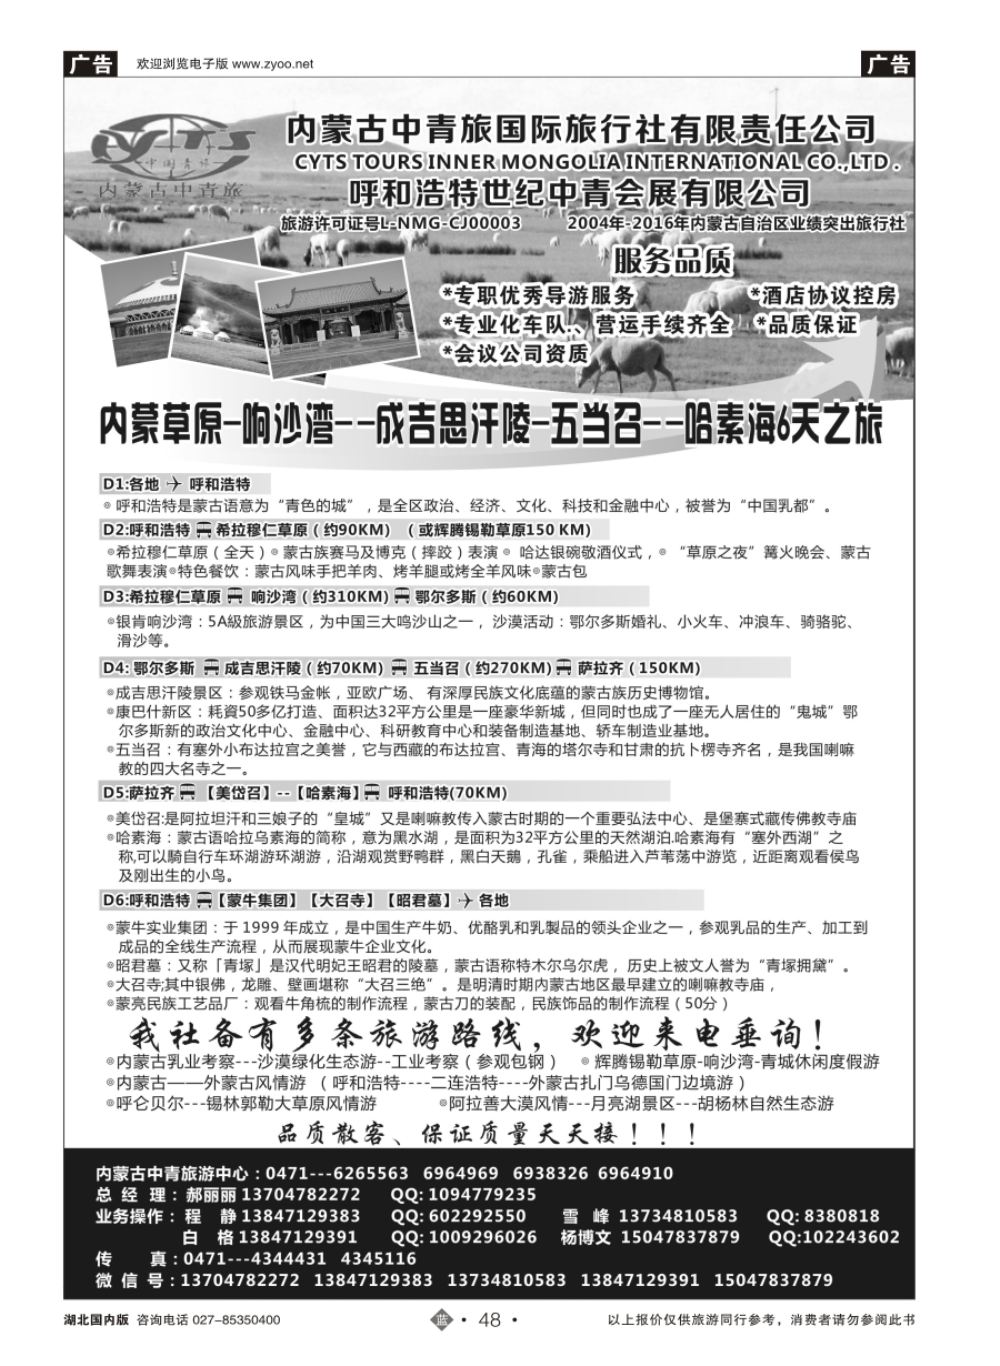 48内蒙古中青旅国际旅行社-旅游中心